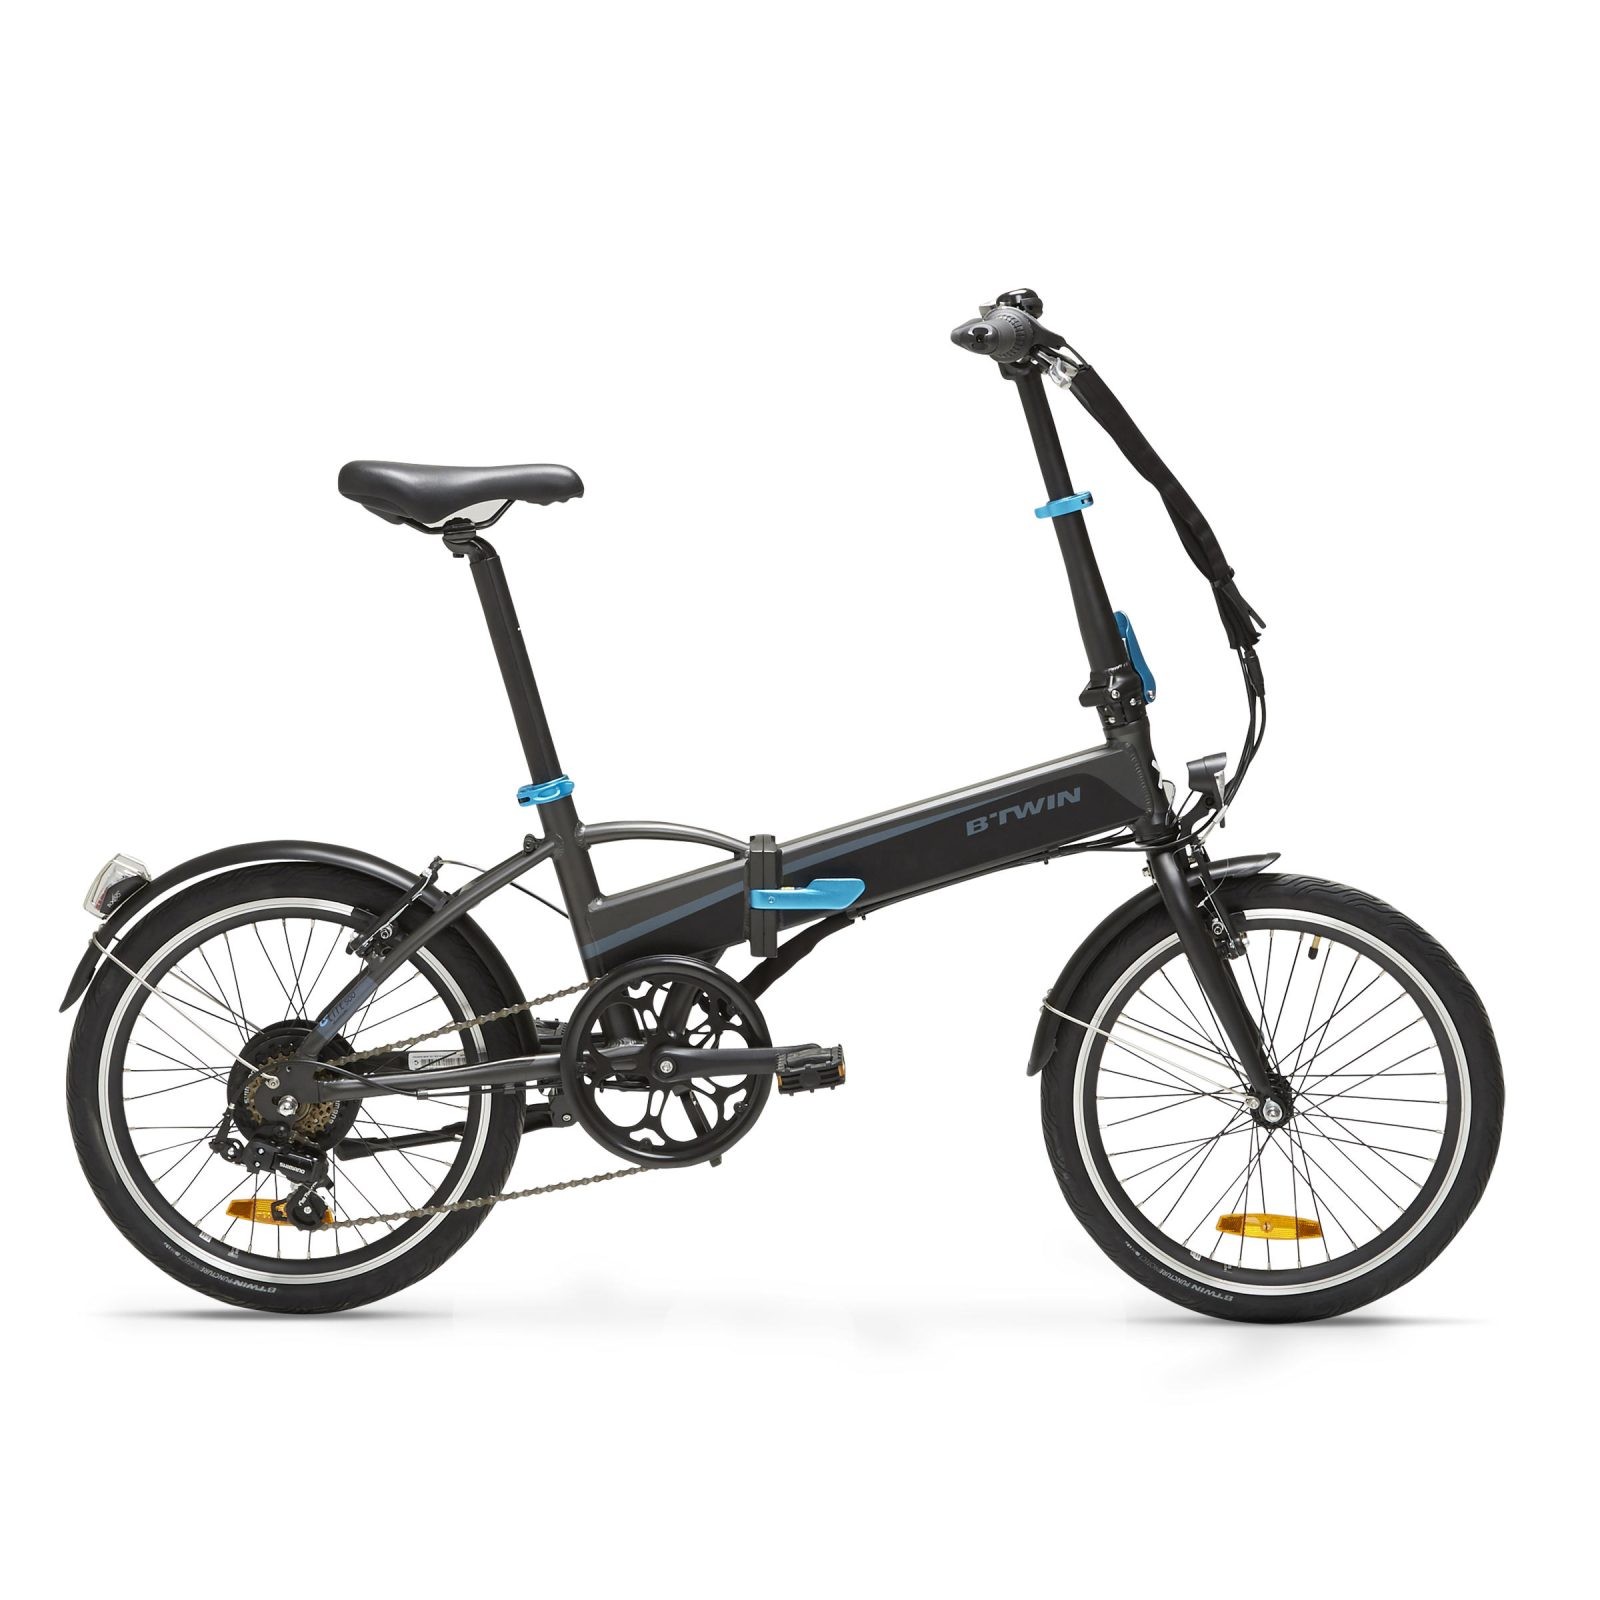 Opus Toc De neînlocuit  Bicicletă pliabilă cu asistență electrică TILT 500 E Negru - Smart Shopping  Online